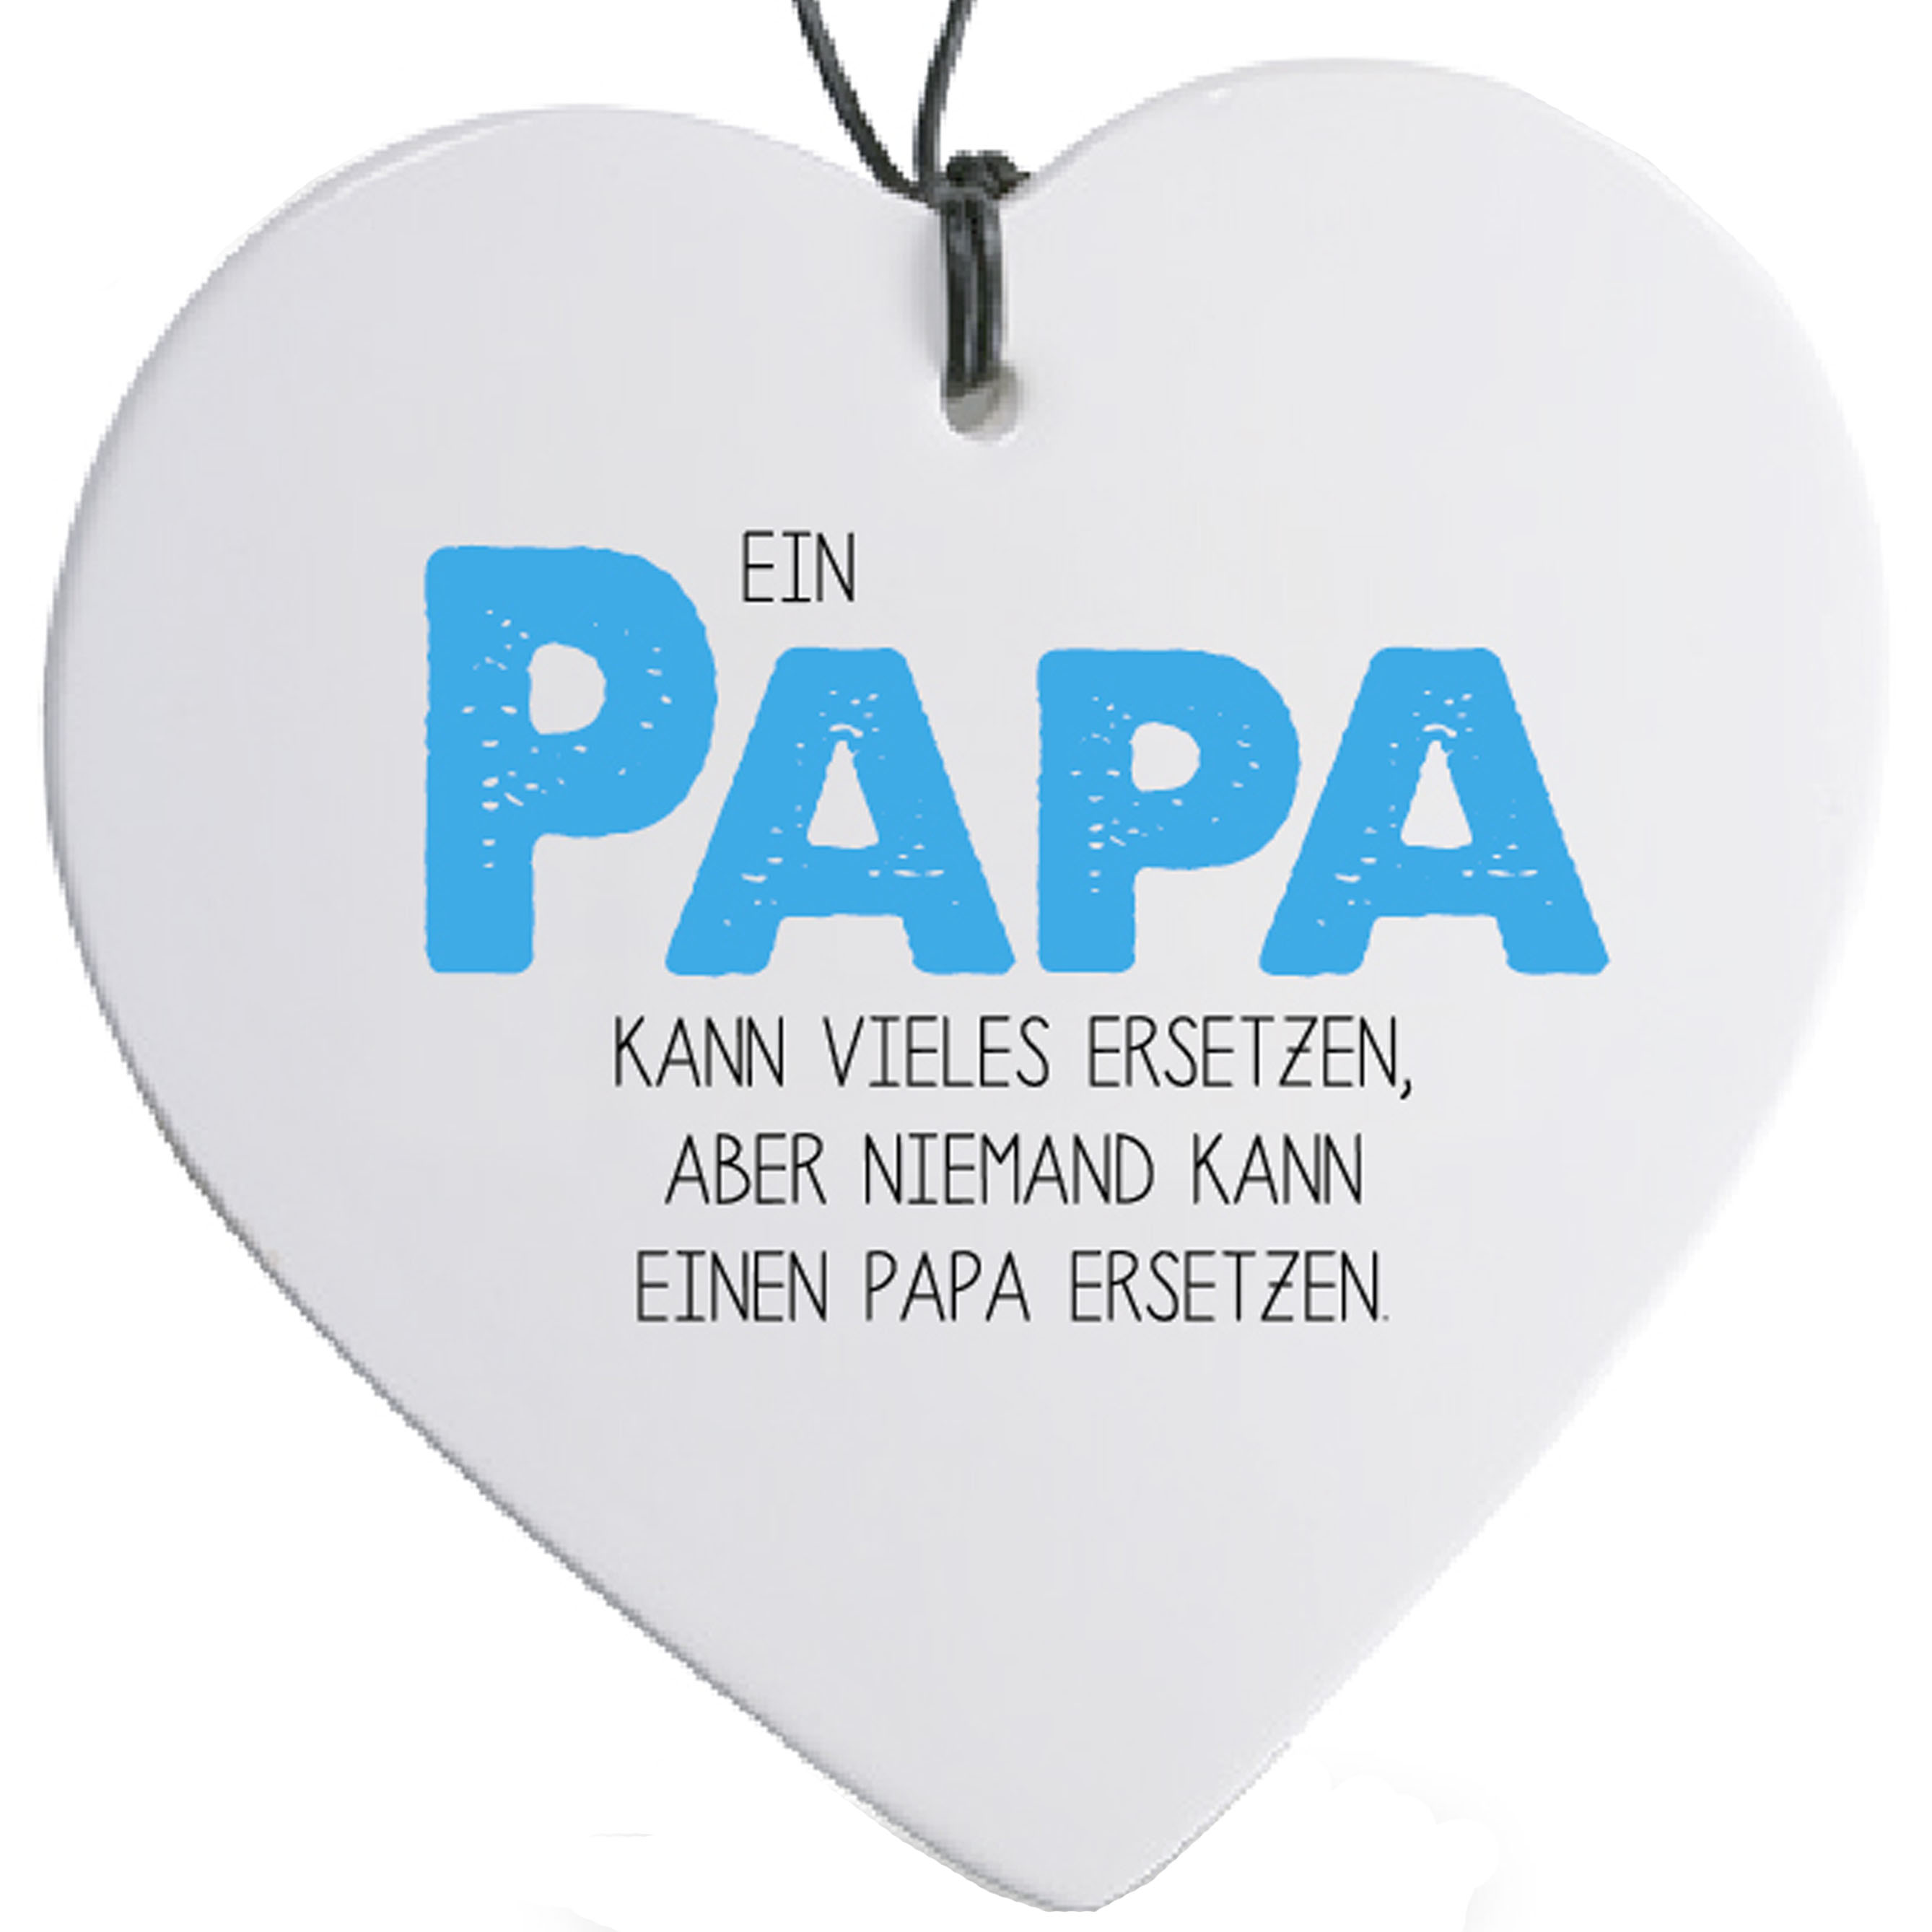 Formano Hänger Herz mit Spruch "Ein Papa kann vieles ersetzen, aber niemand kann einen Papa ersetzen", 749062, 4025809749062